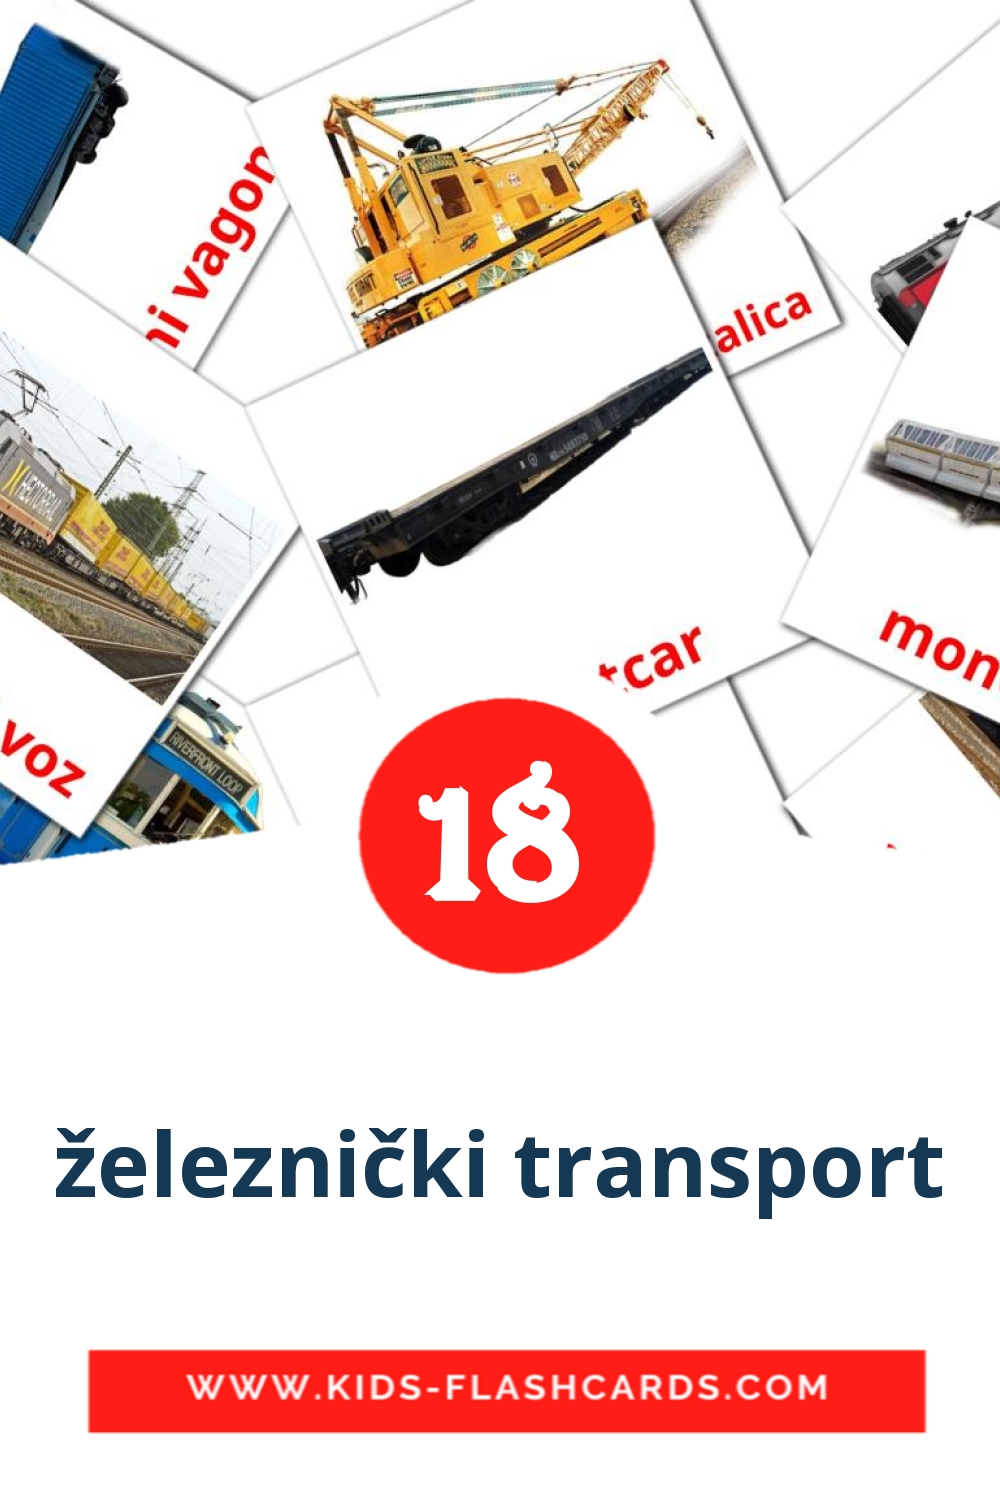 18 tarjetas didacticas de železnički transport para el jardín de infancia en serbio